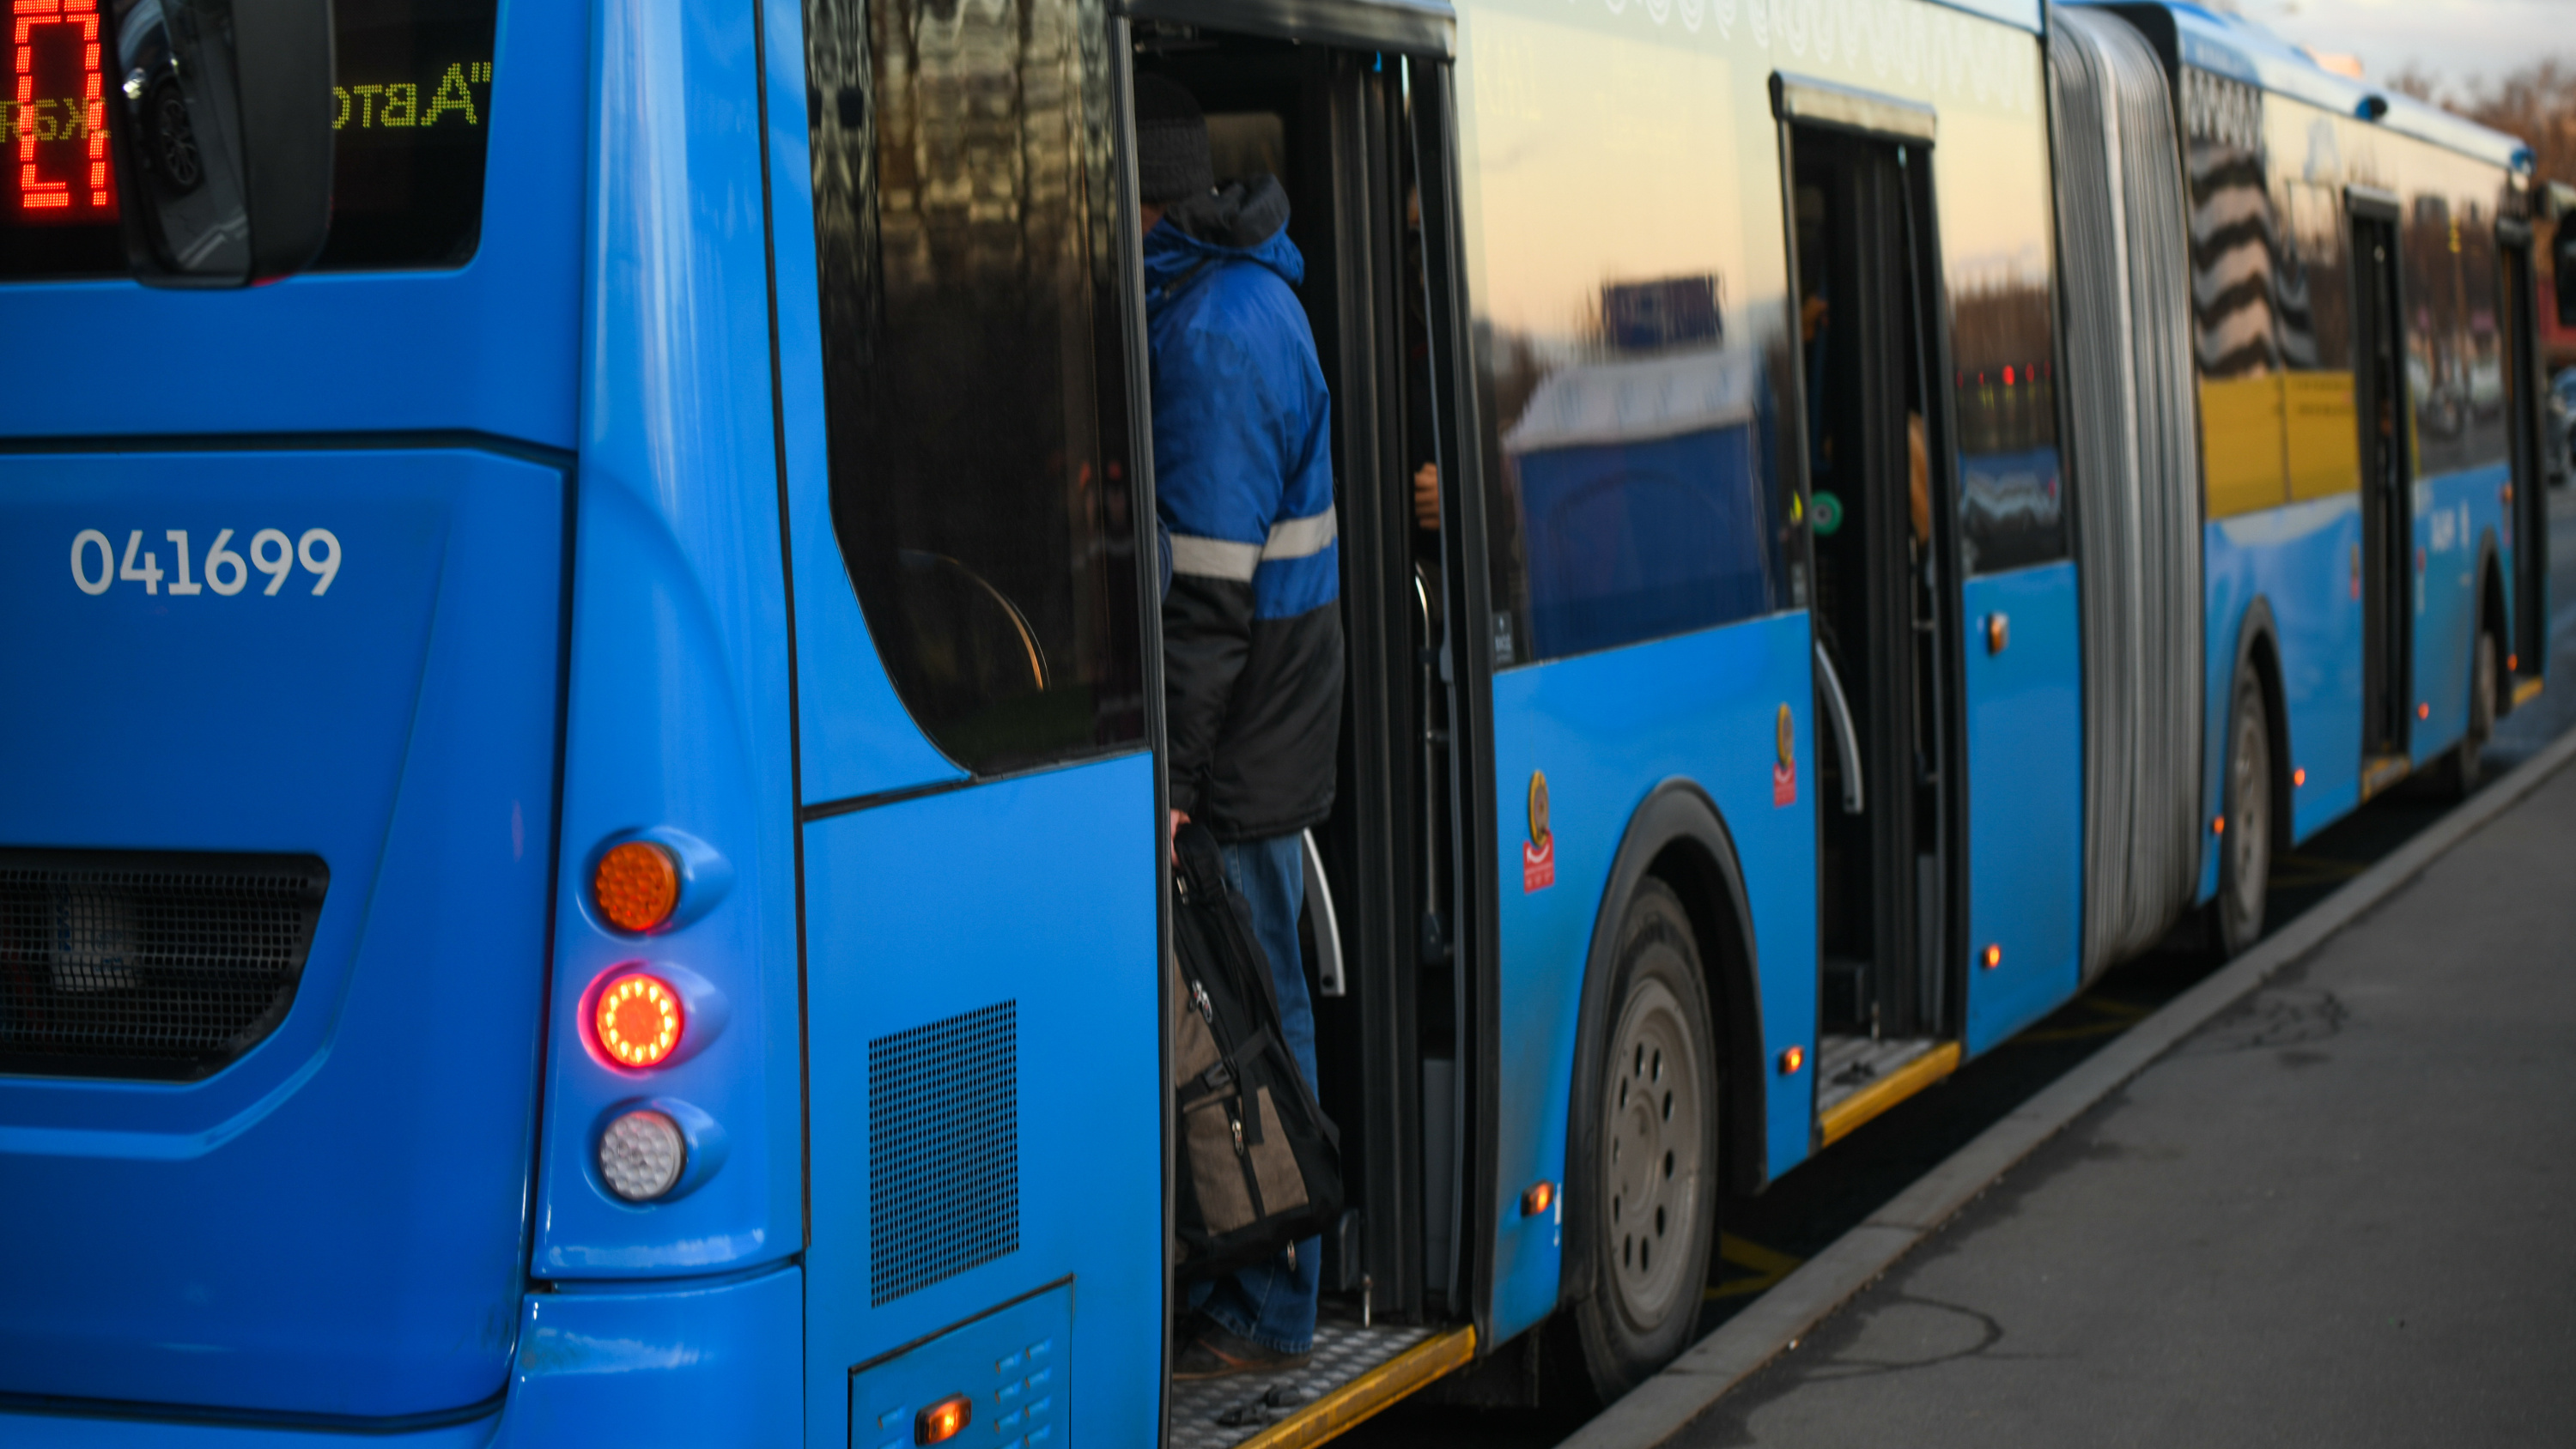 Перекрытия, бесплатные автобусы и изменение маршрутов. Как в пасхальные праздники будет работать городской транспорт Москвы